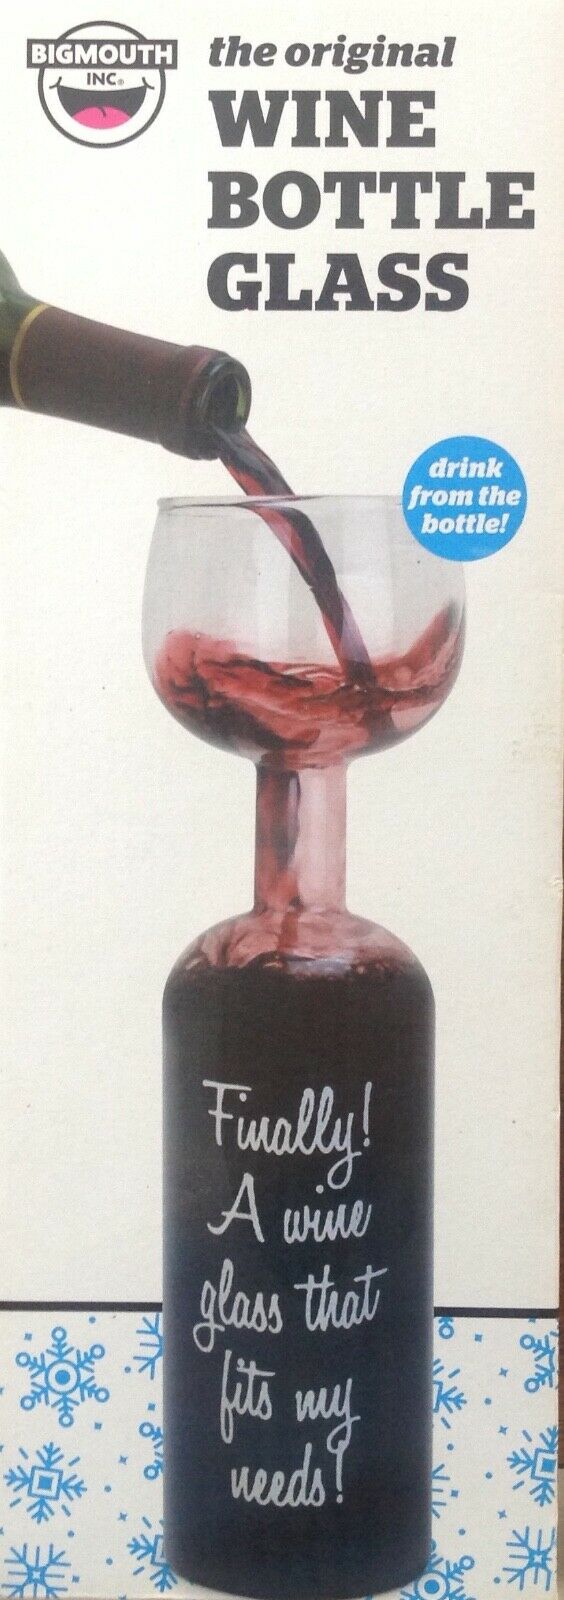 Bigmouth The Original Wine Bottle Glass 750ml New in Box